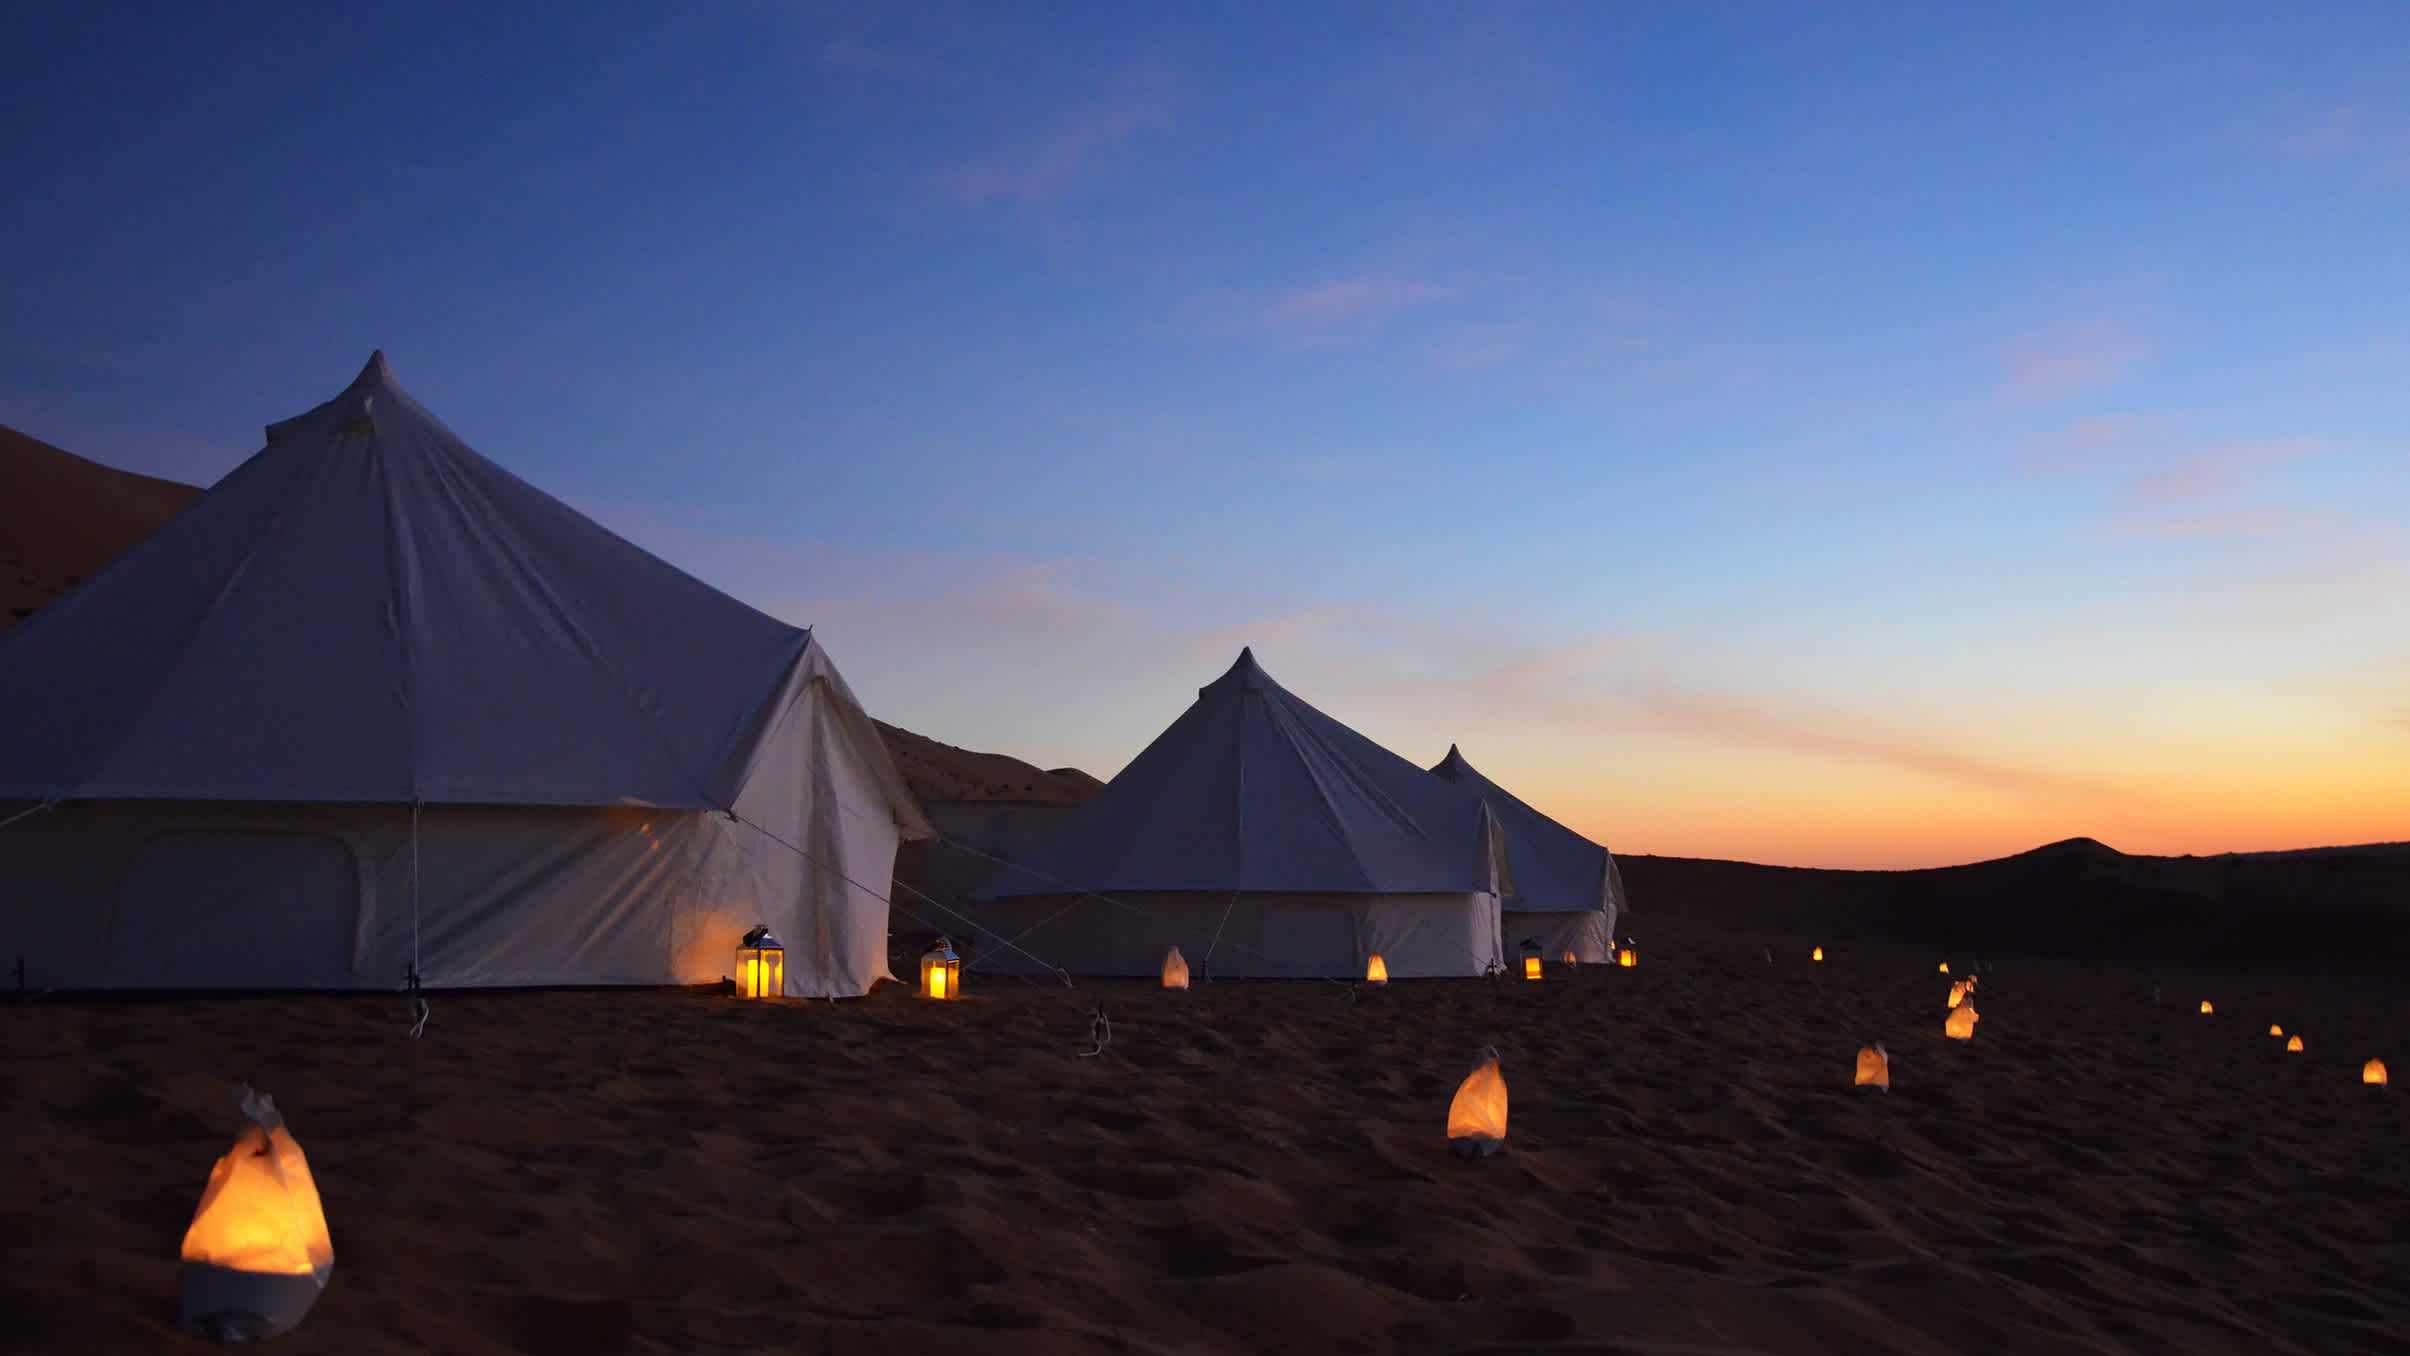 Übernachten Sie in einem Zelt in der Wüste von Oman - ein romantisches Erlebnis als Paar - von Tourlane organisiert.